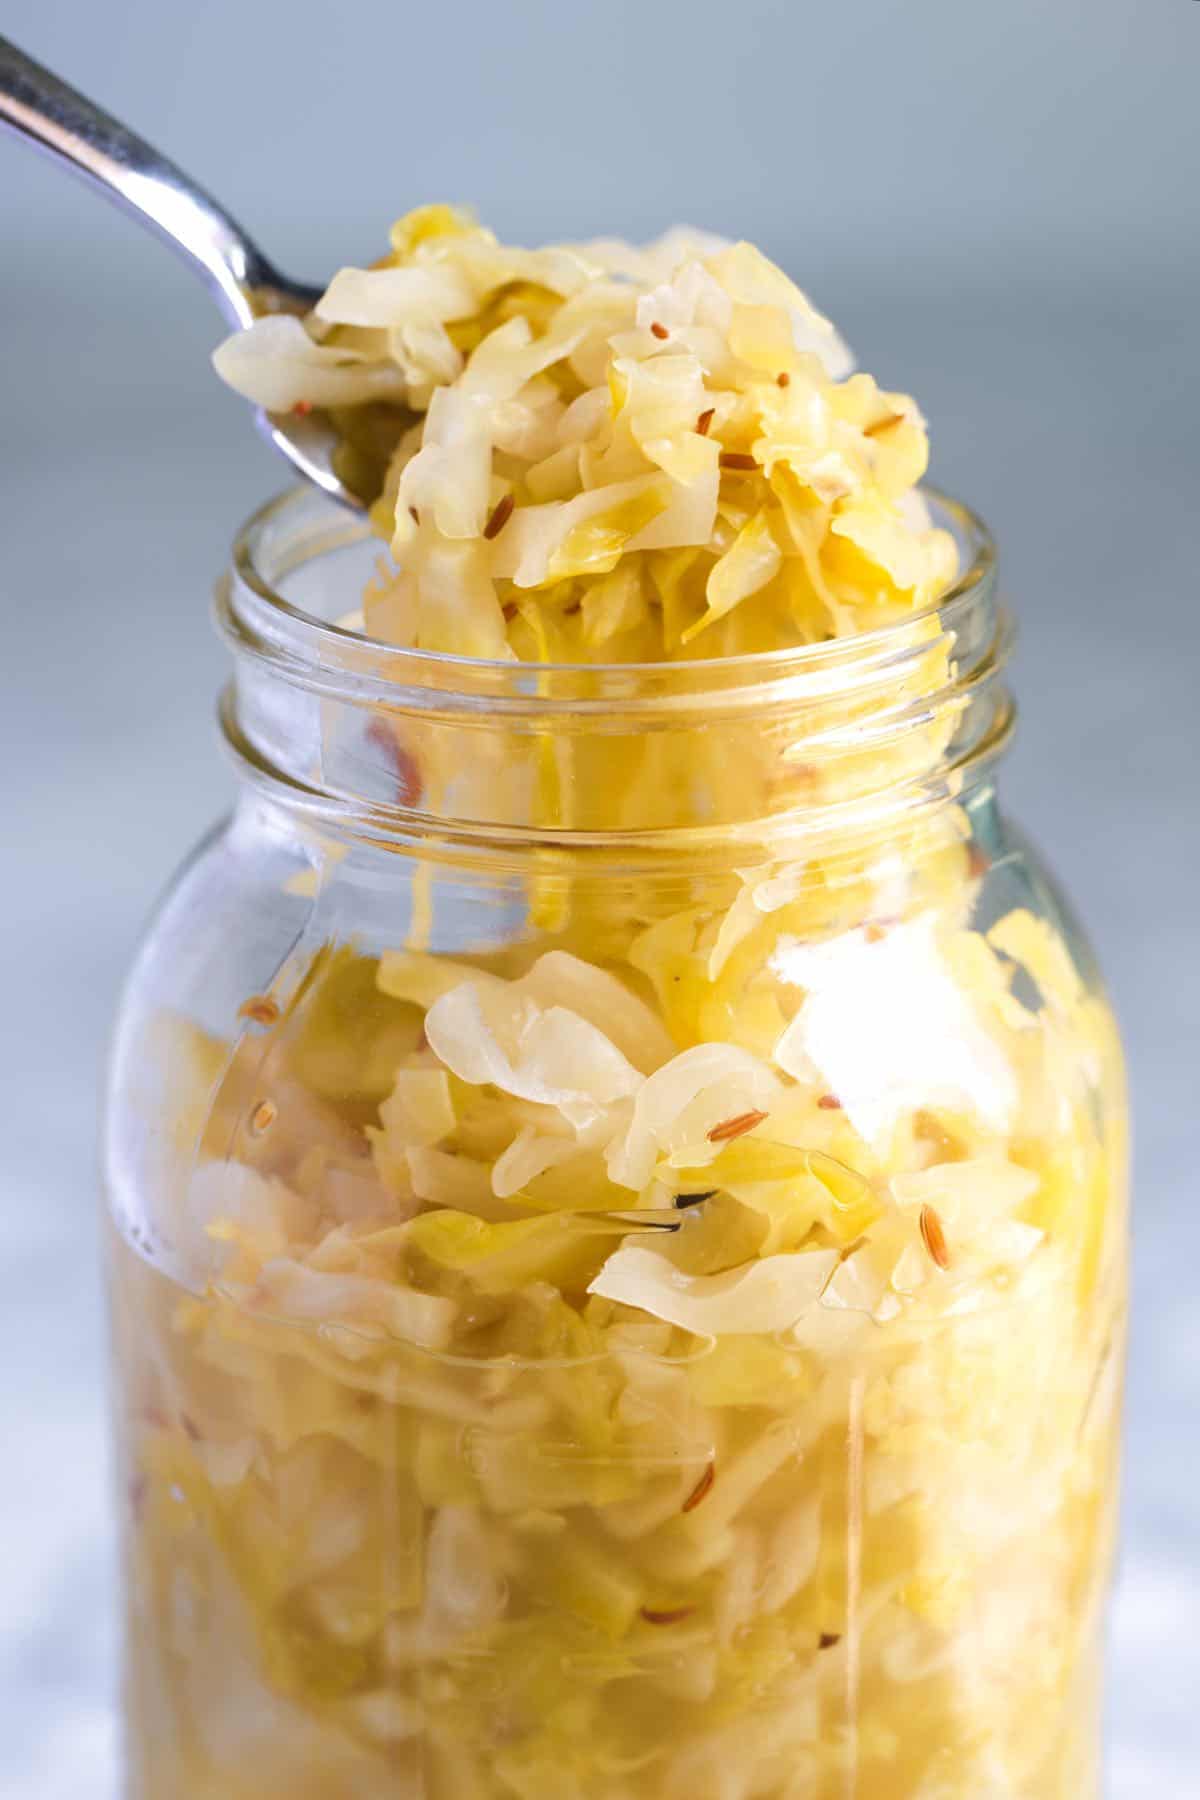 A jar of homemade sauerkraut